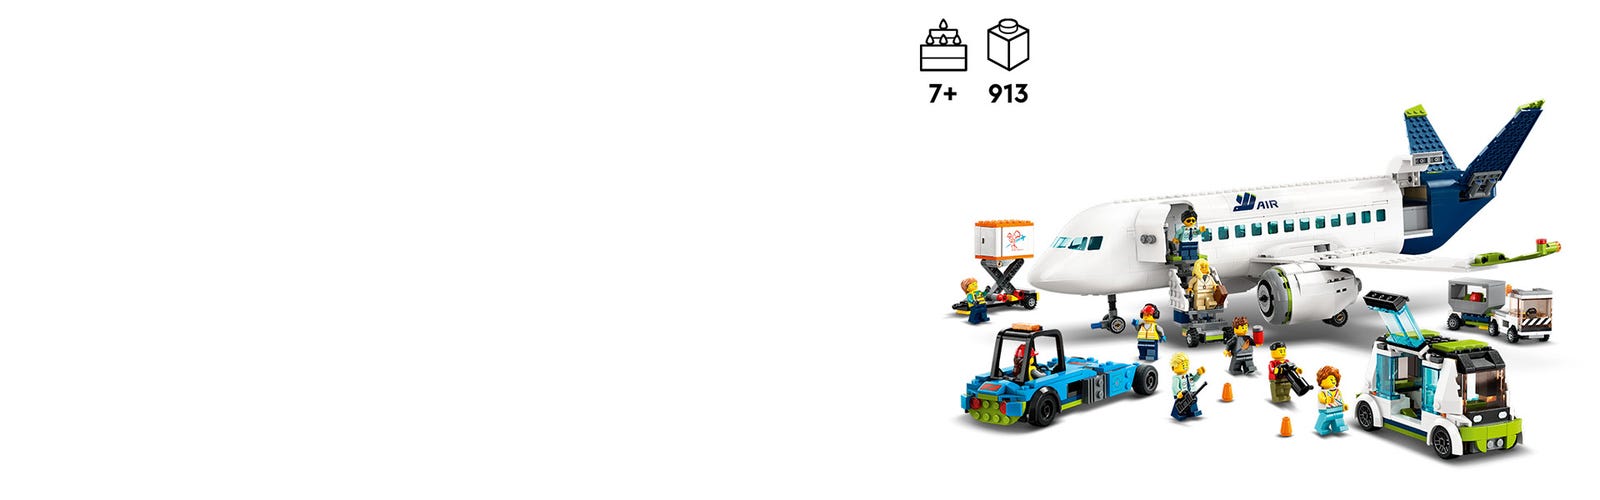 LEGO 60367 City Avión de Pasajeros, Juguete de Construcción de Avión Grande  con Vehículos del Aeropuerto